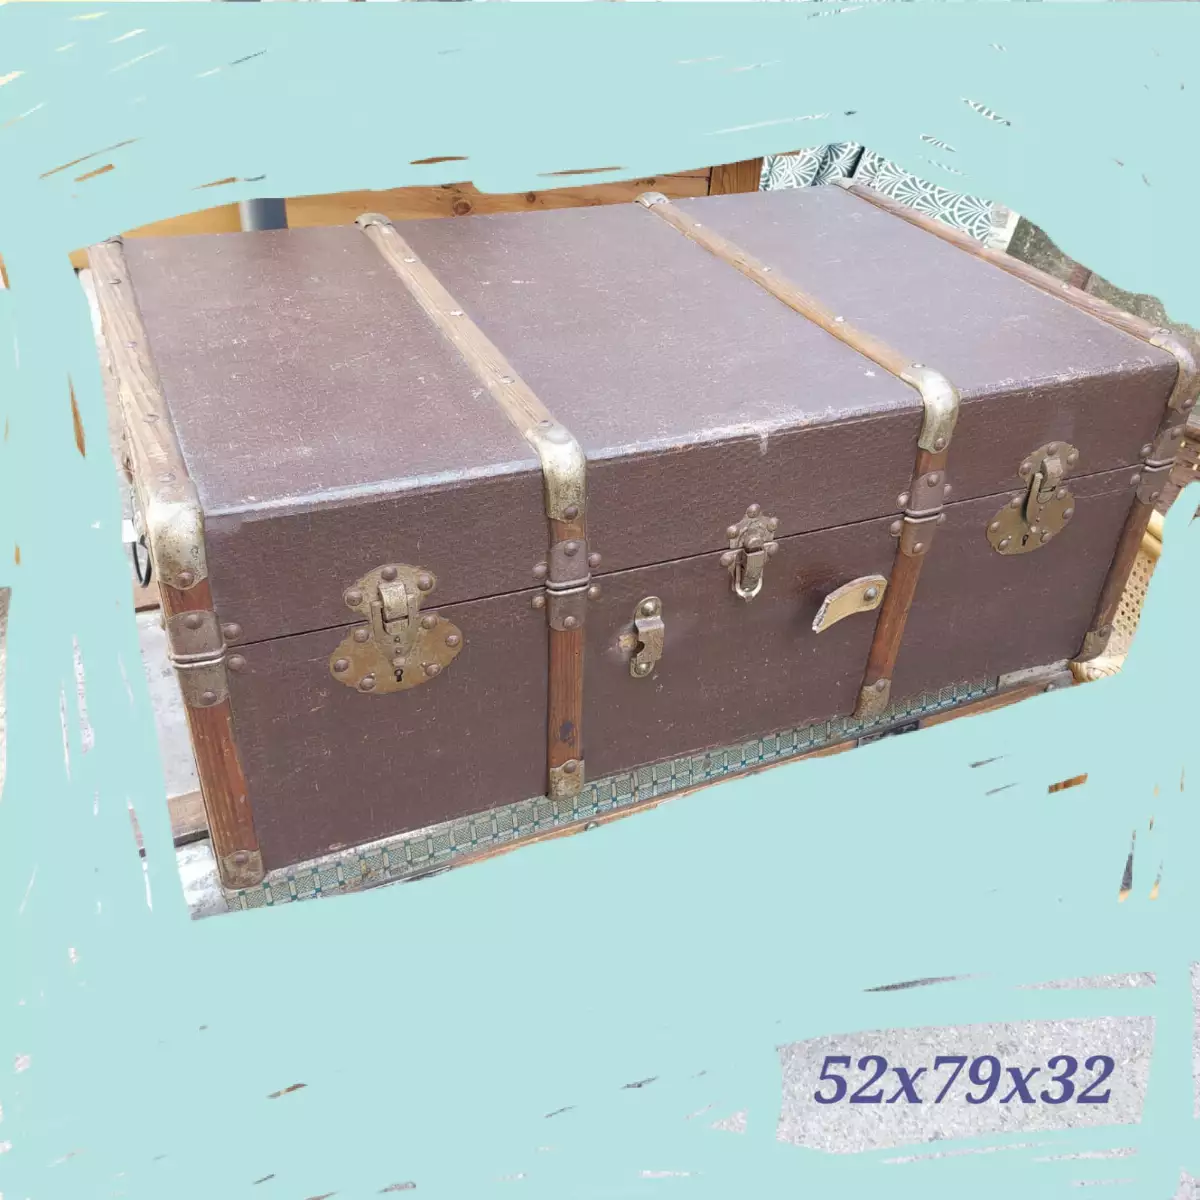 Grande valise de voyage ancienne, en bois avec renfort bois